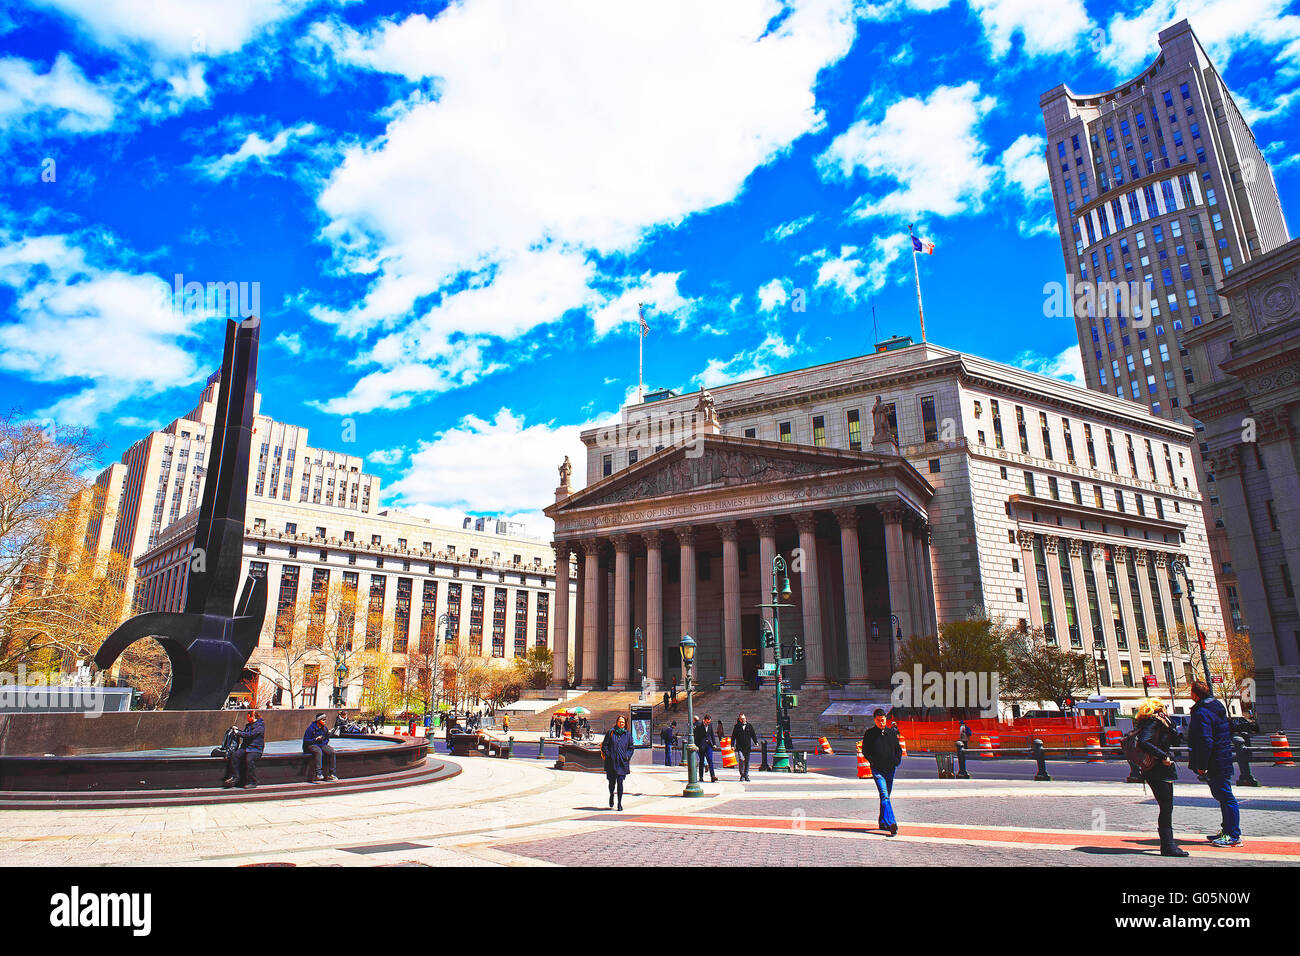 New York, USA - 24. April 2015: Touristen auf der Straße und New York State Supreme Building oder New York County Courthouse, in Lower Manhattan, New York, USA. Stockfoto